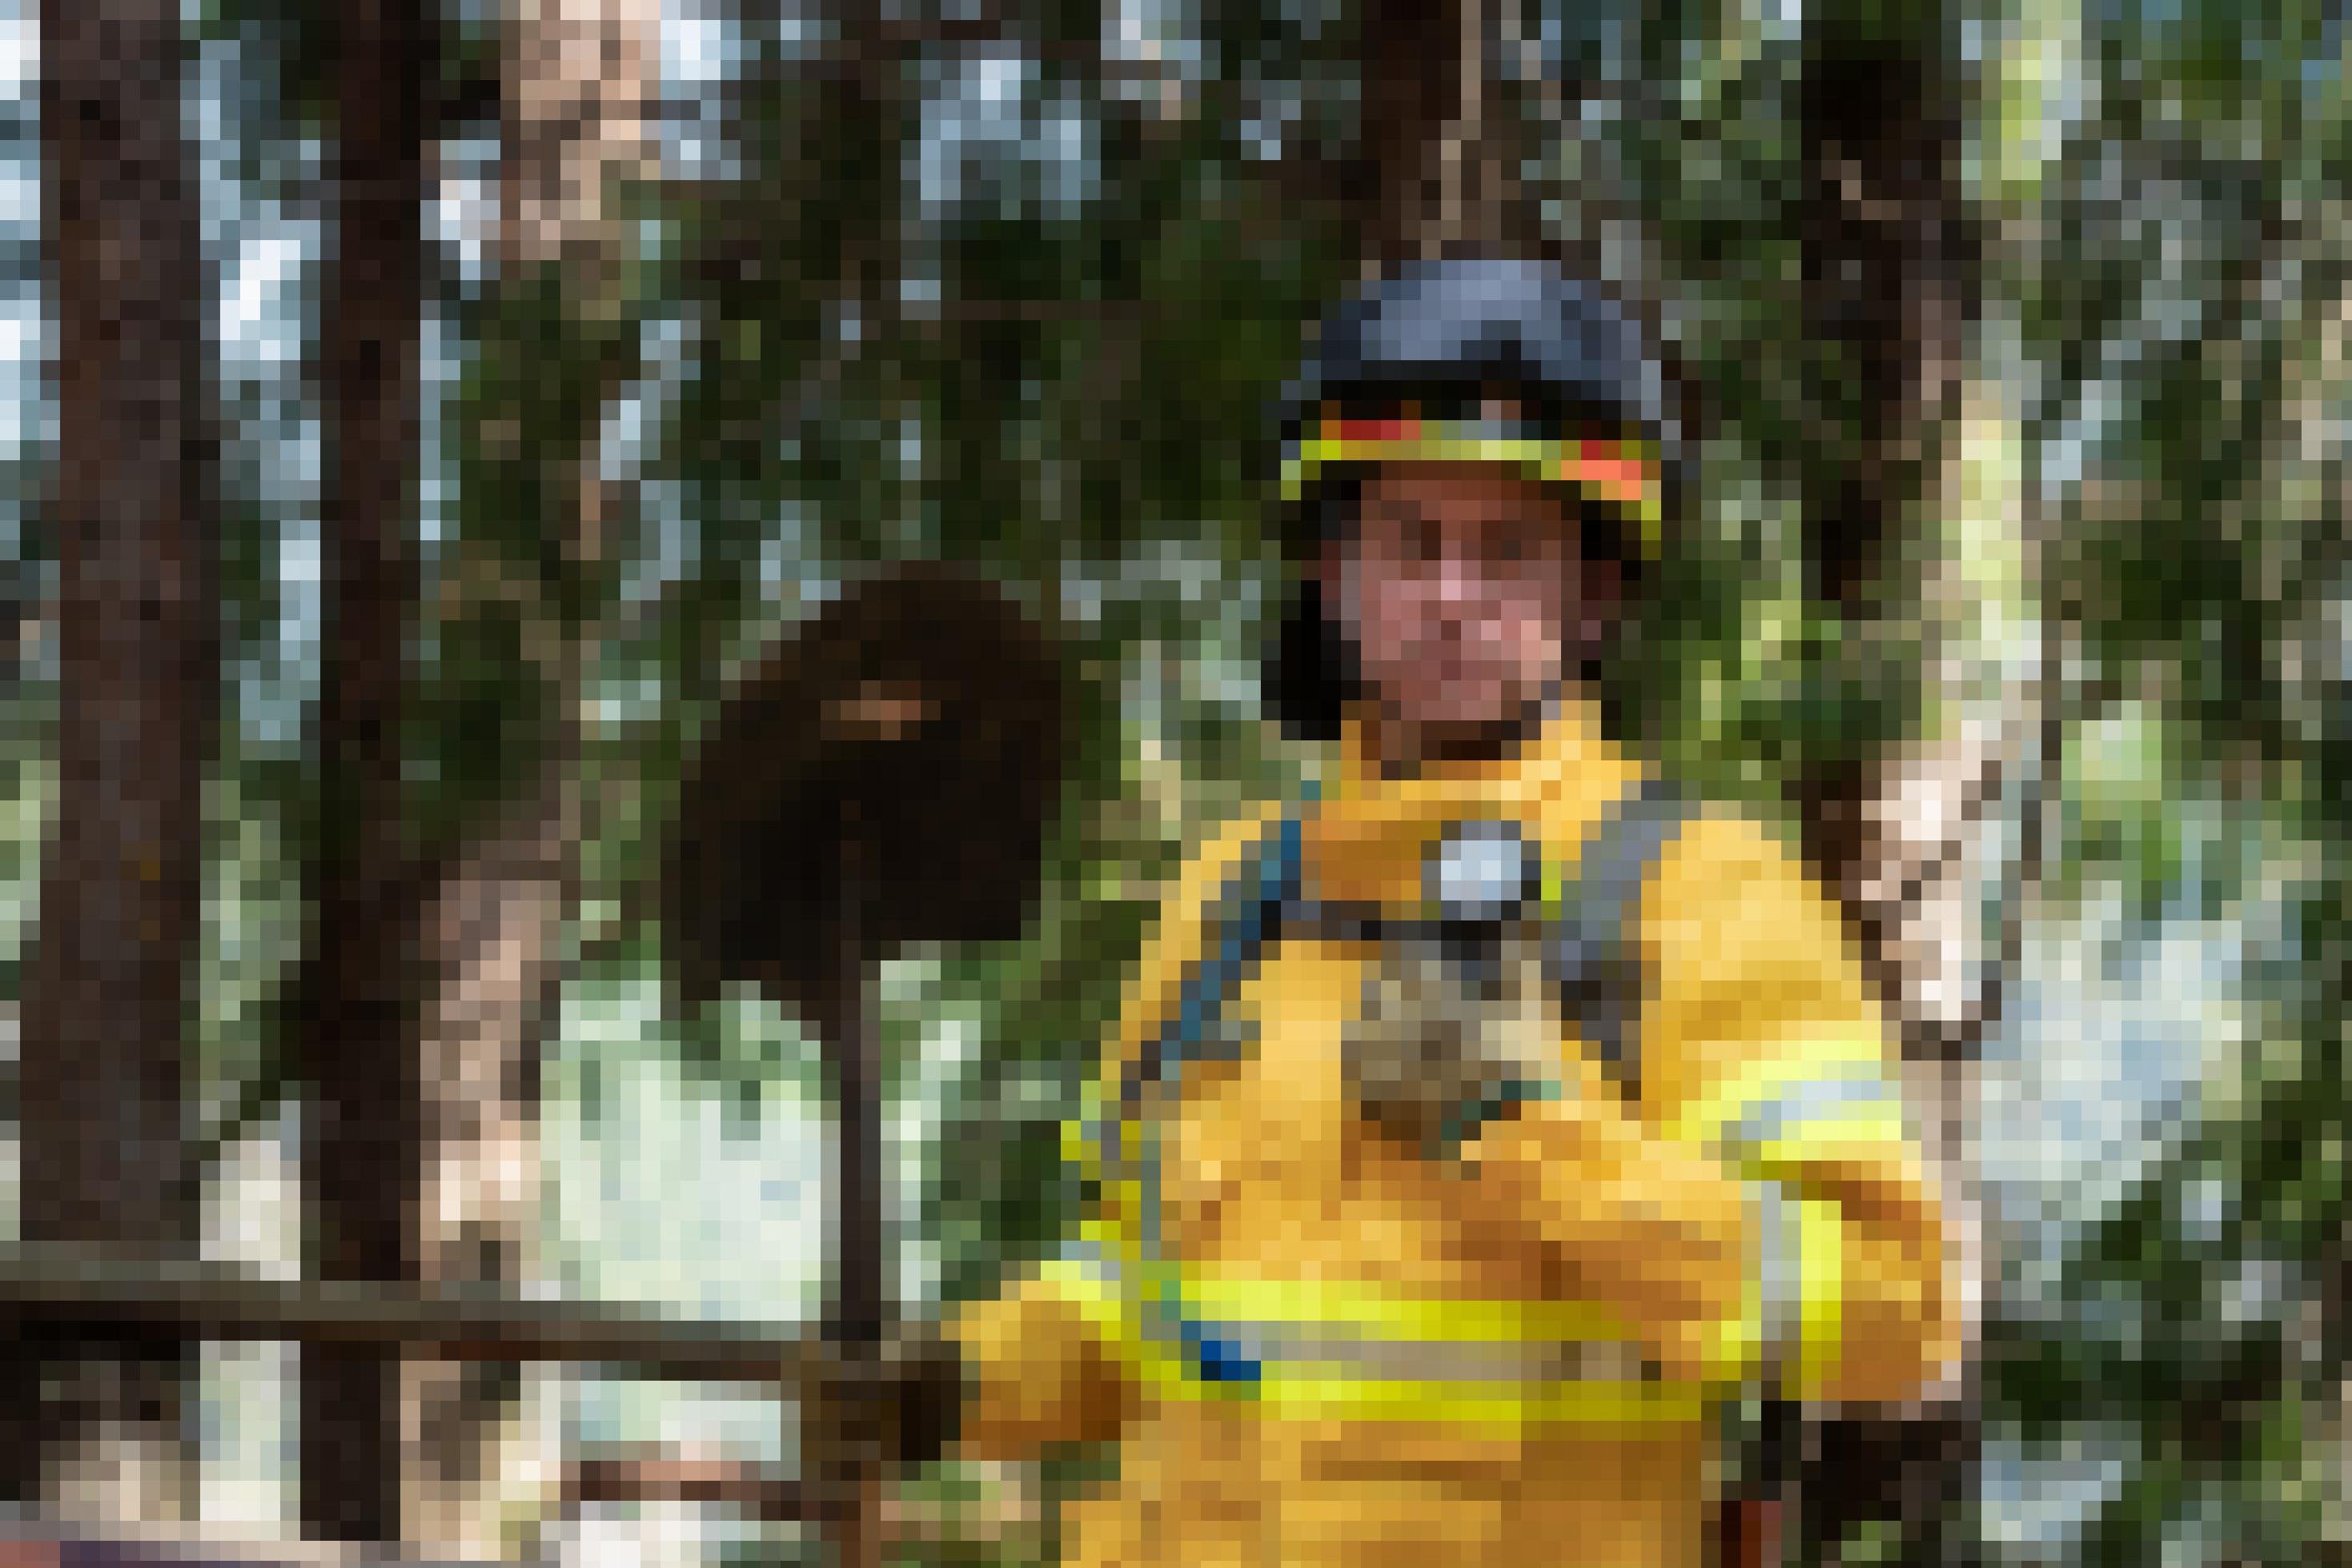 Feuerwehrmann in gelber Einsatzkleidung, Helm, verrußten Handschuhen, Spaten in der Hand im Kiefernwald. Er sieht müde aus.